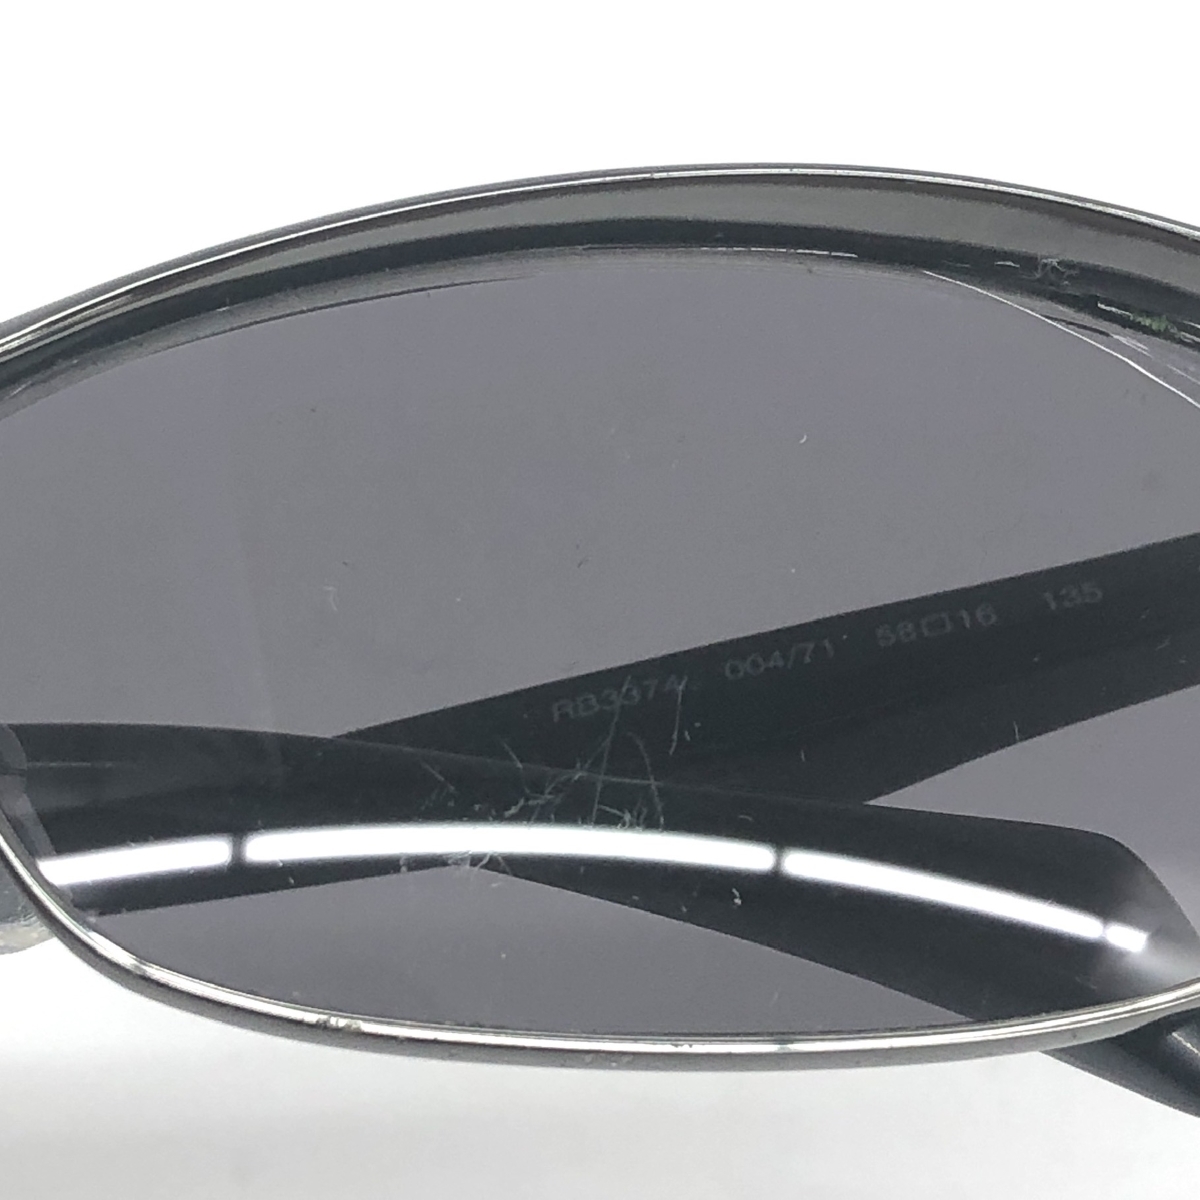 ◆Ray-Ban レイバン サングラス◆RB3374 ブラック/シルバーカラー メンズ メガネ 眼鏡 sunglasses 服飾小物_画像9